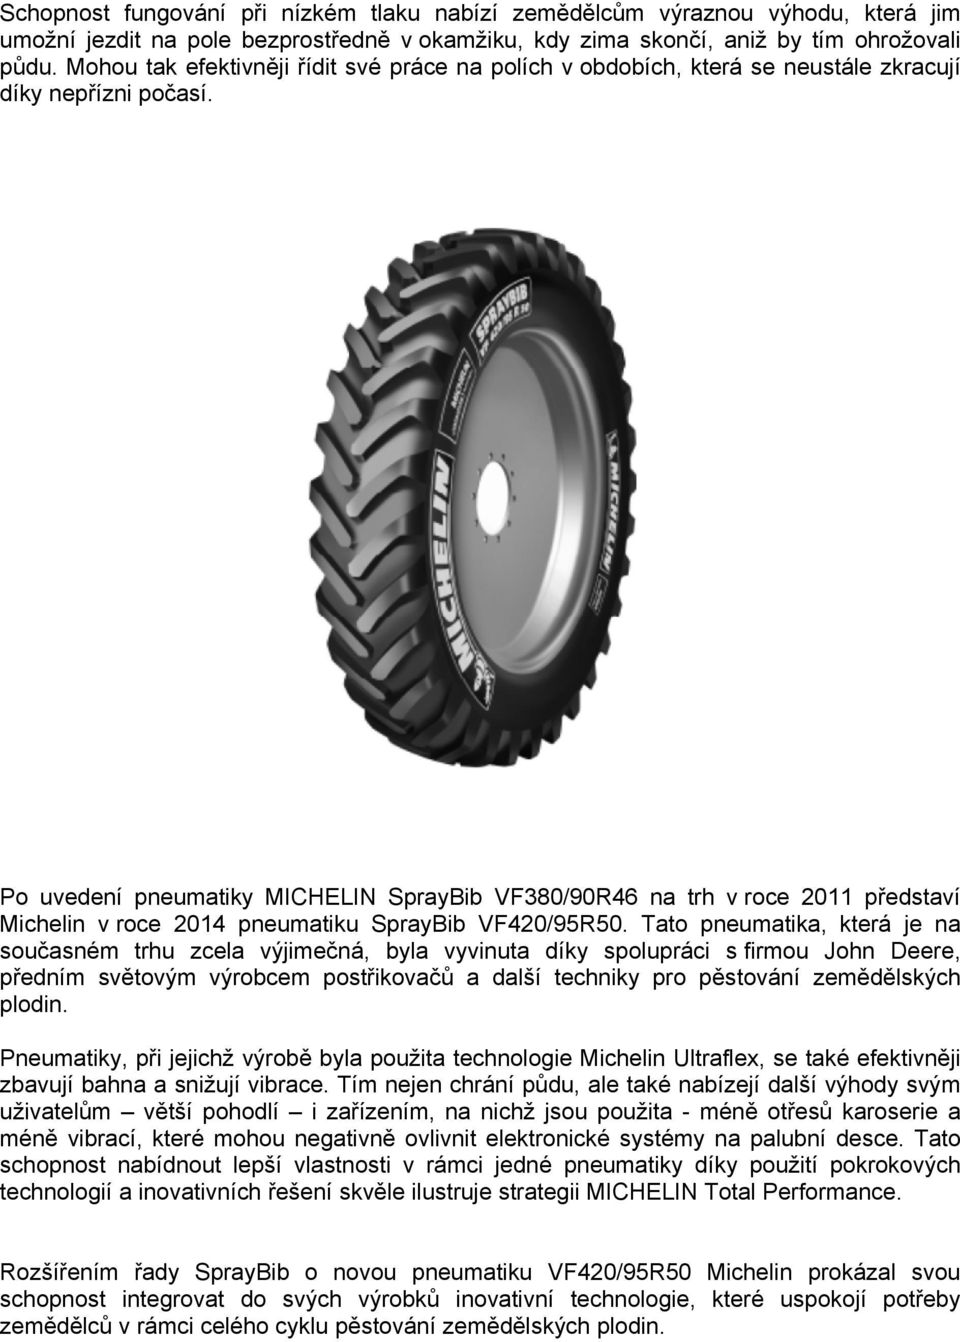 Po uvedení pneumatiky MICHELIN SprayBib VF380/90R46 na trh v roce 2011 představí Michelin v roce 2014 pneumatiku SprayBib VF420/95R50.